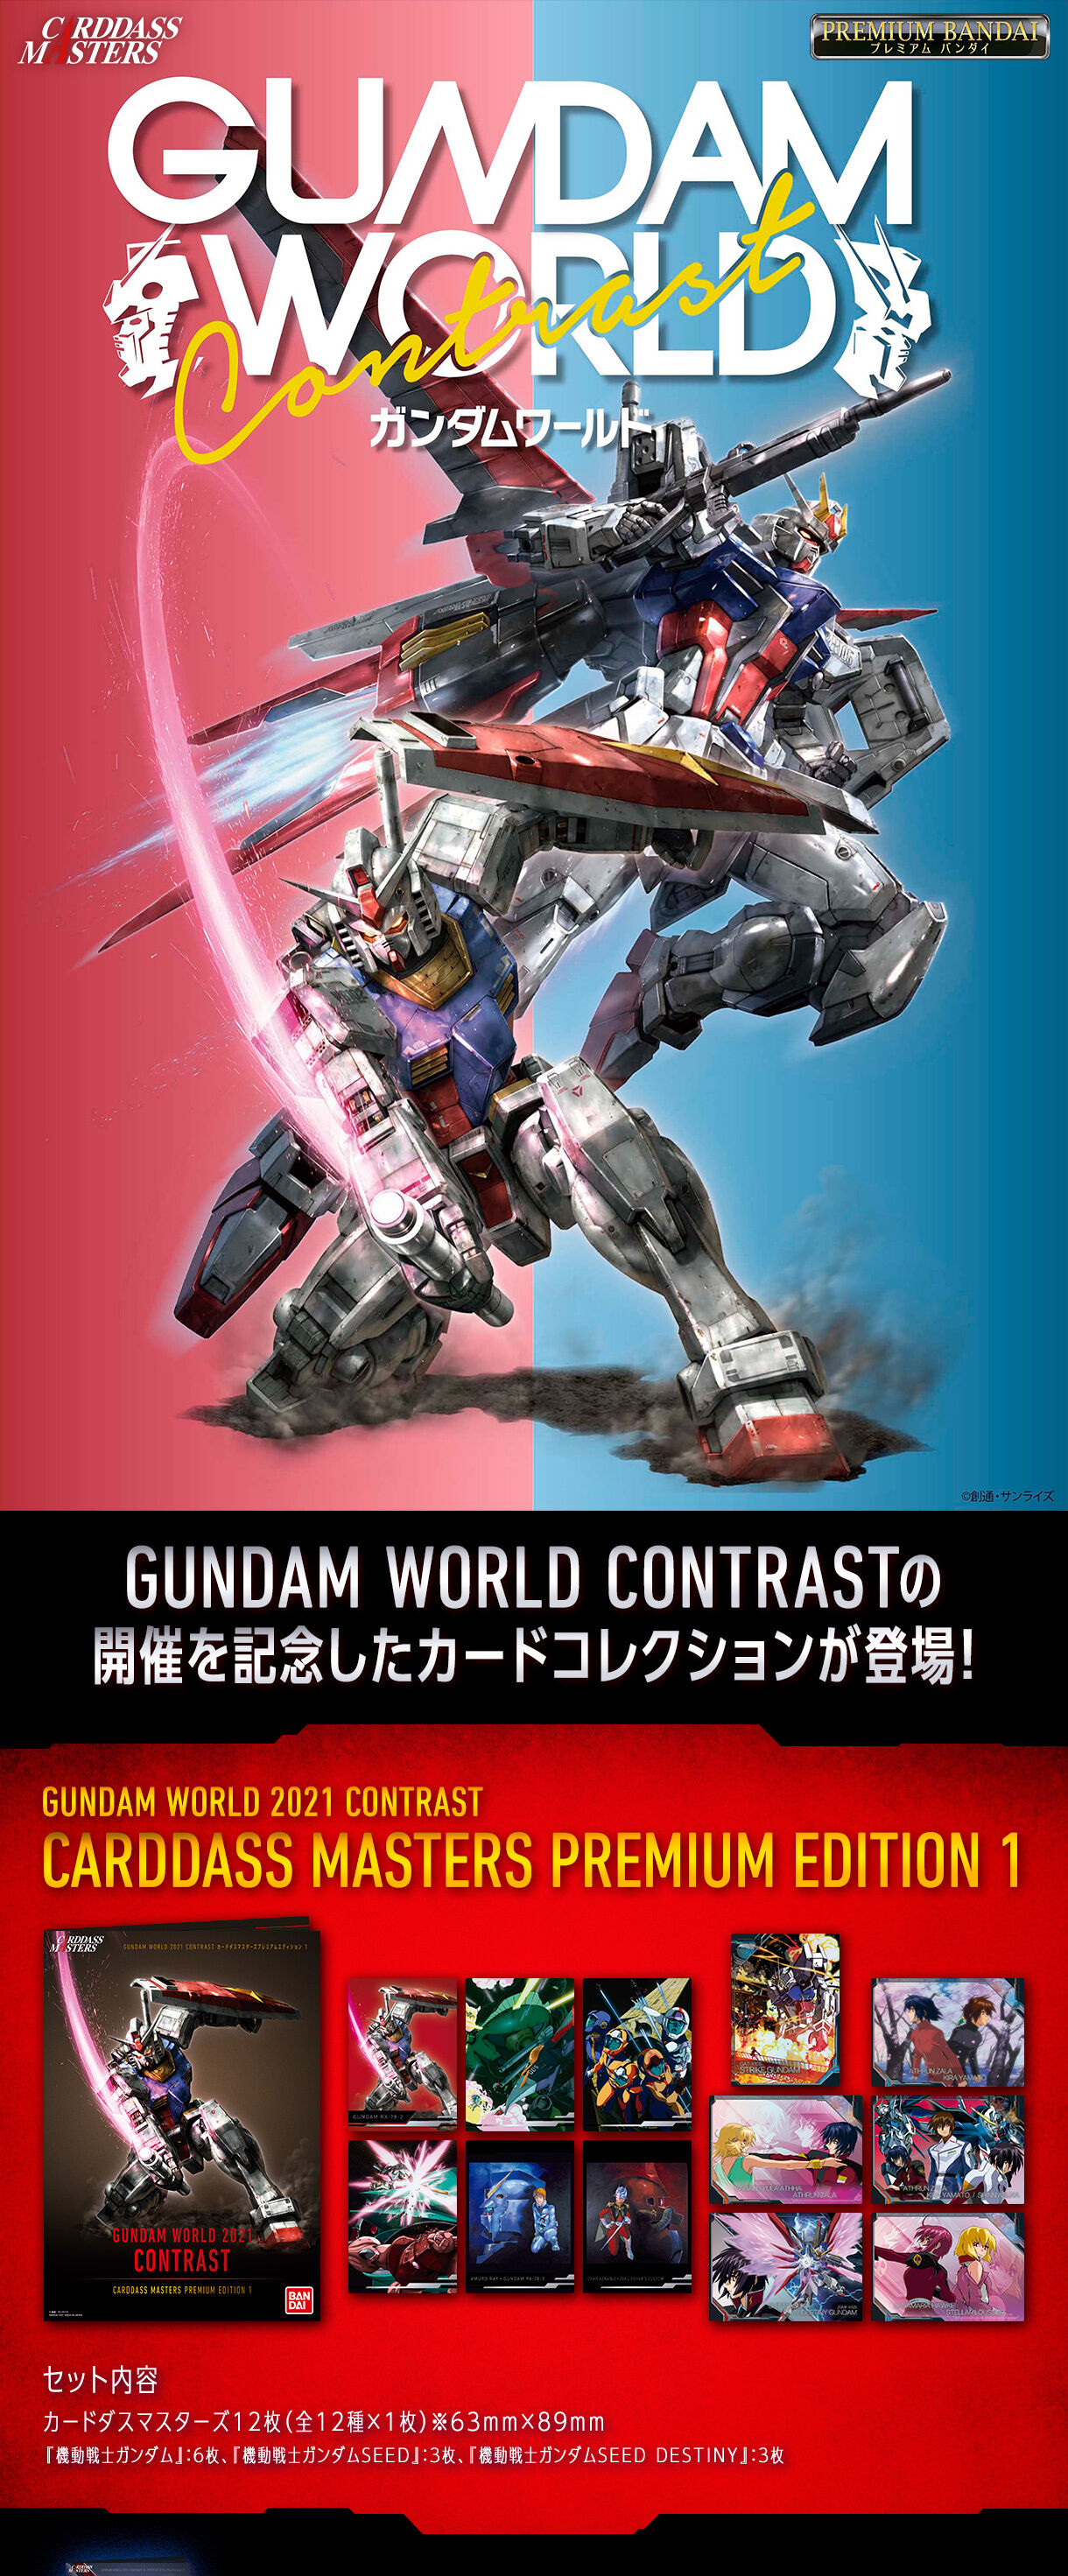 GUNDAM WORLD 2021 CONTRAST カードダスマスターズプレミアムエディション1 ガンダムシリーズ  フィギュア・プラモデル・プラキット バンダイナムコグループ公式通販サイト